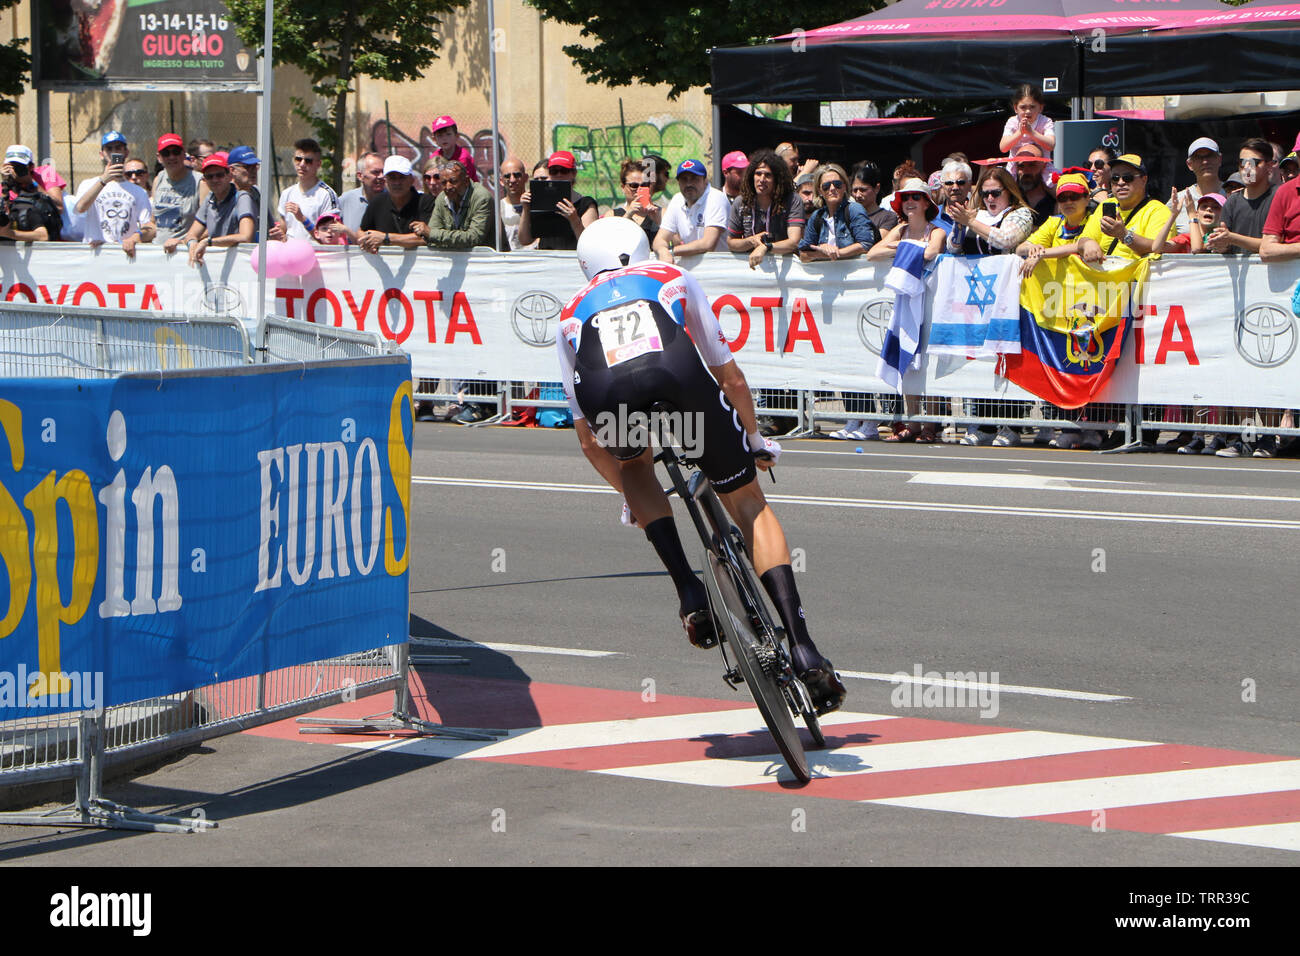 Cycliste Pro en compétition dans un procès de temps à l'étape finale du Tour d'Italie 2019 à Vérone, Italie Banque D'Images